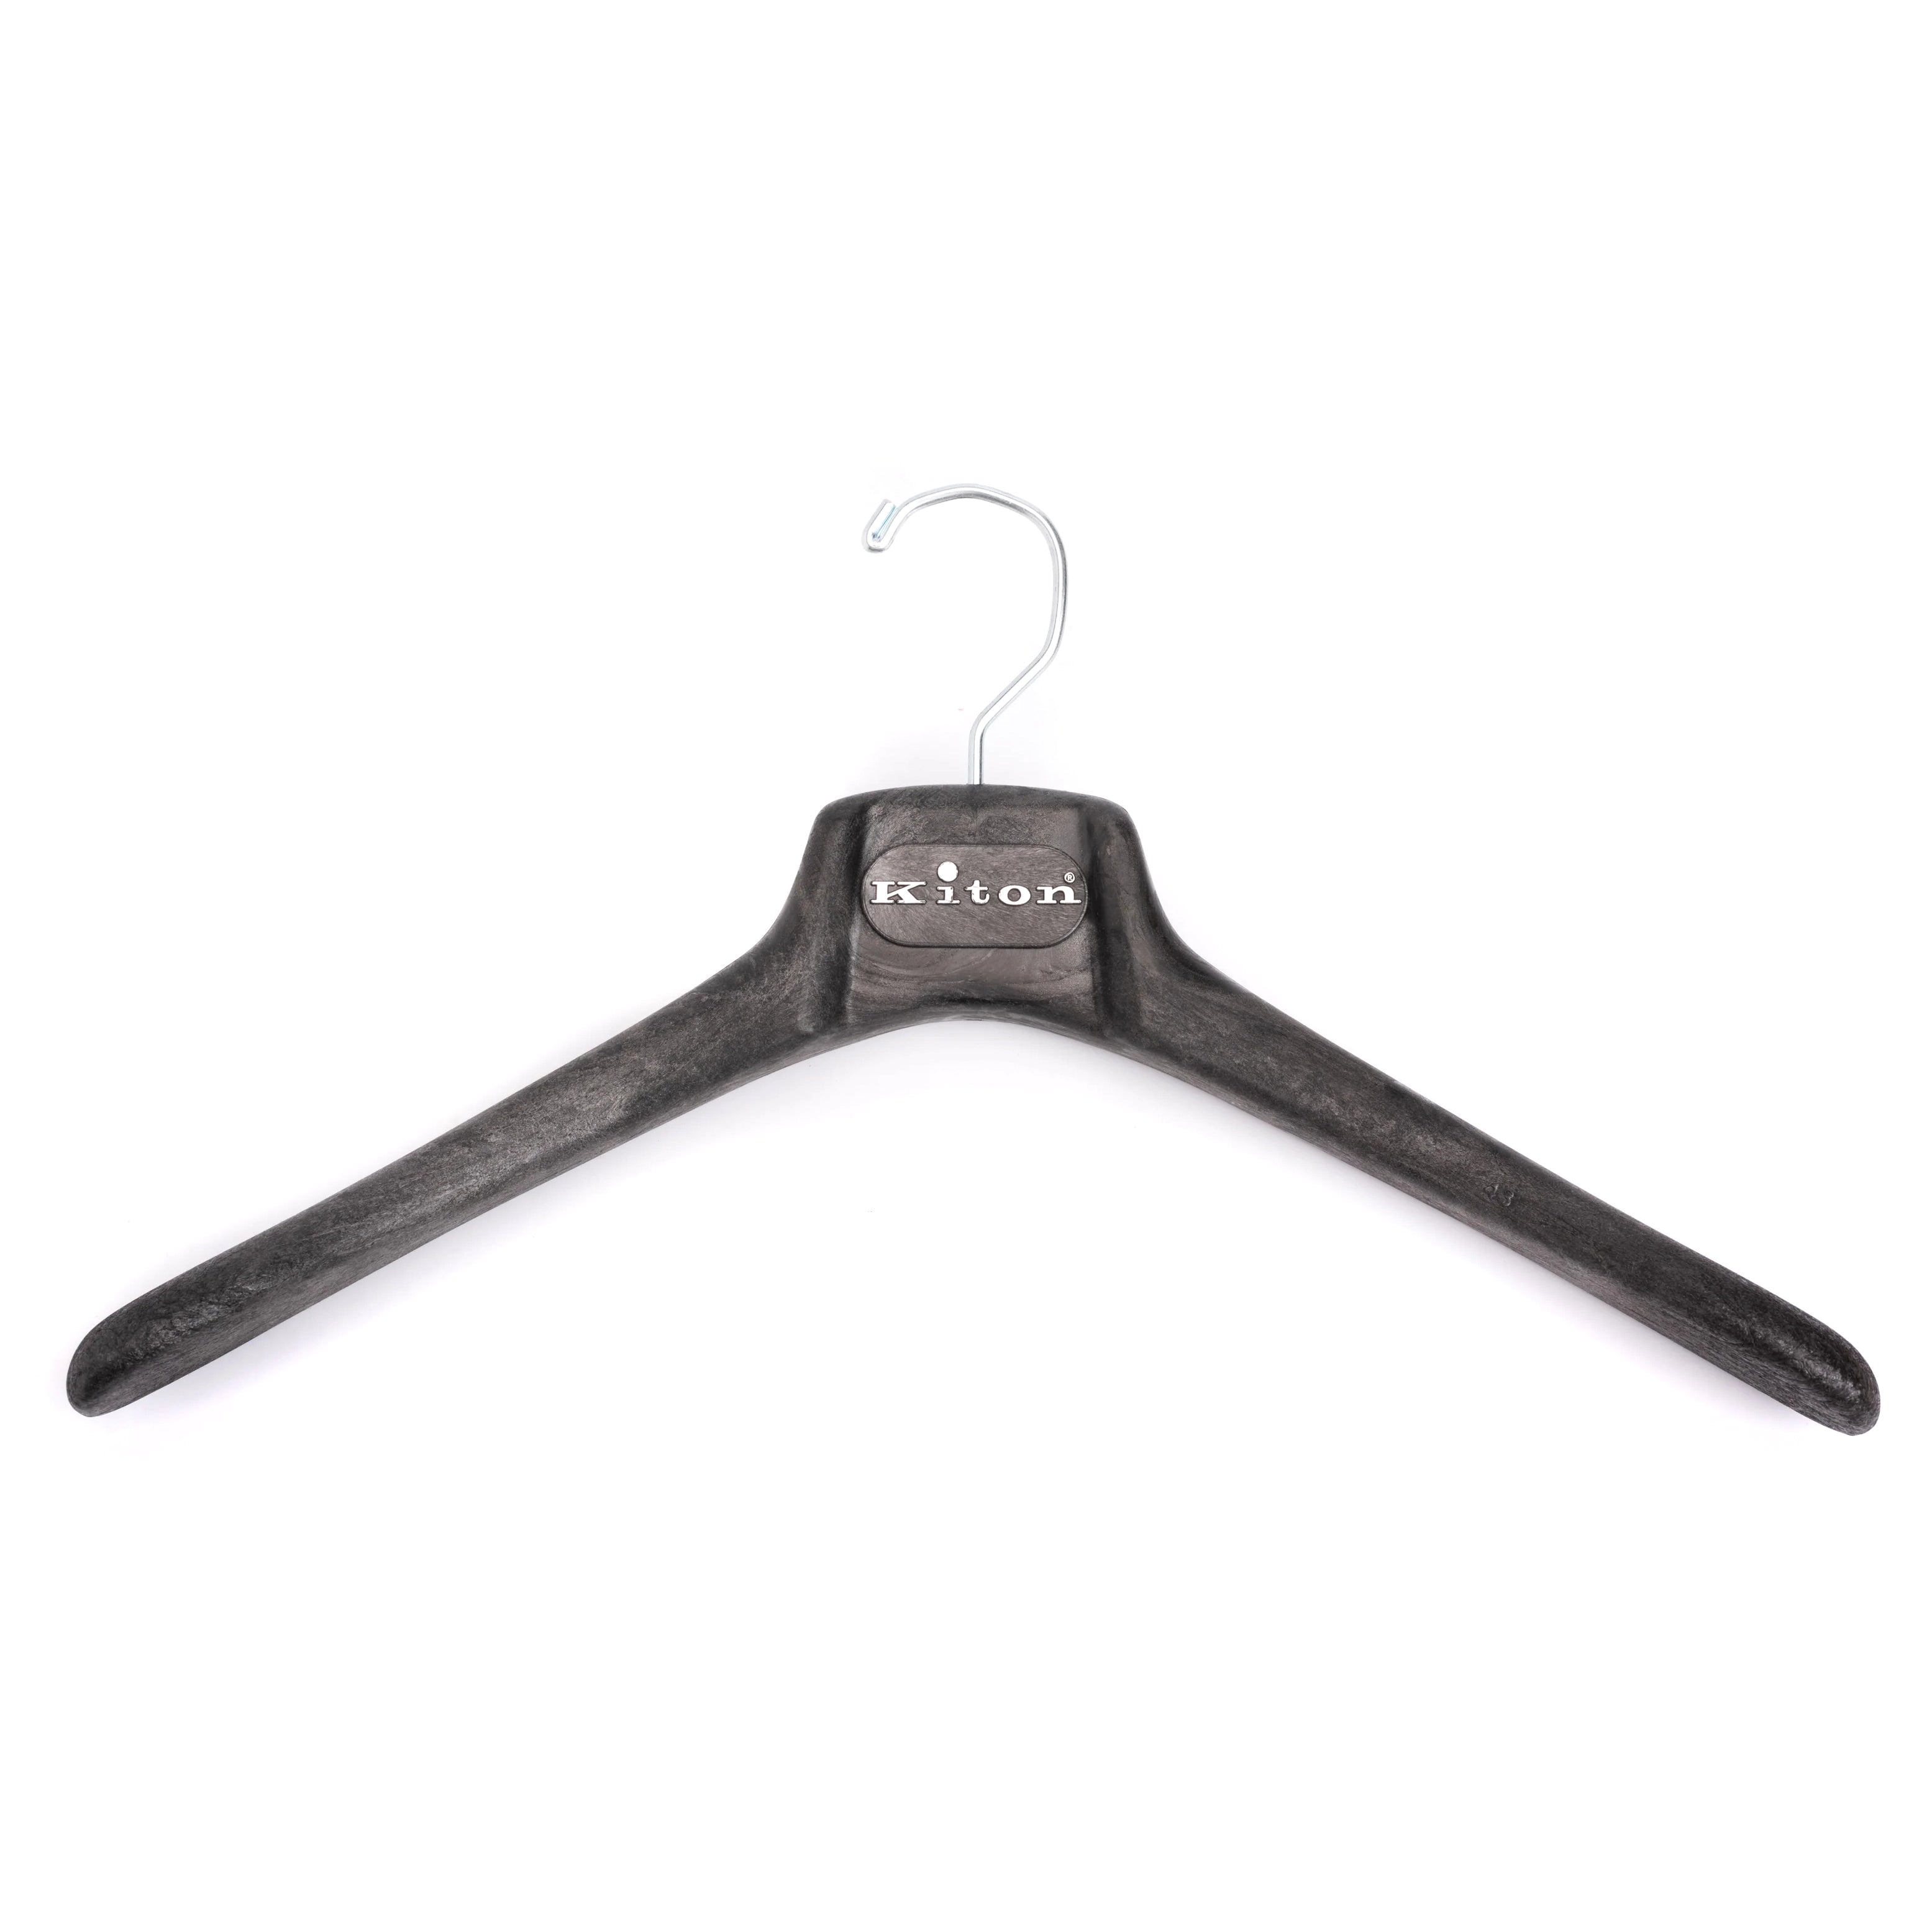 KITON Black Plastic Wood Look Coat Hanger Set of 5 KITON